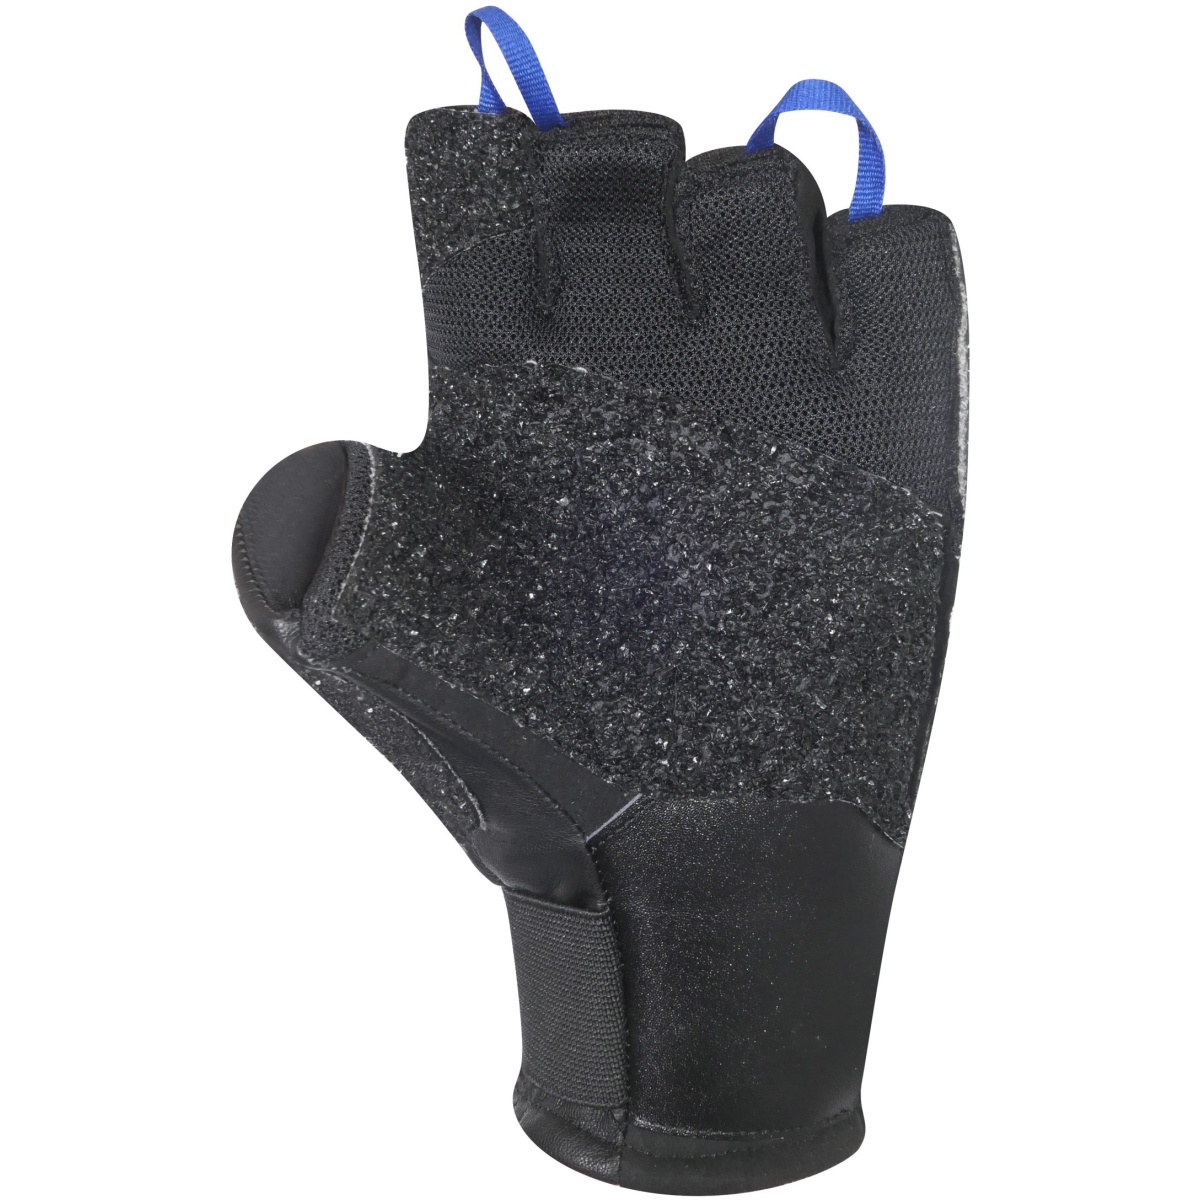 Glove Multi Grip